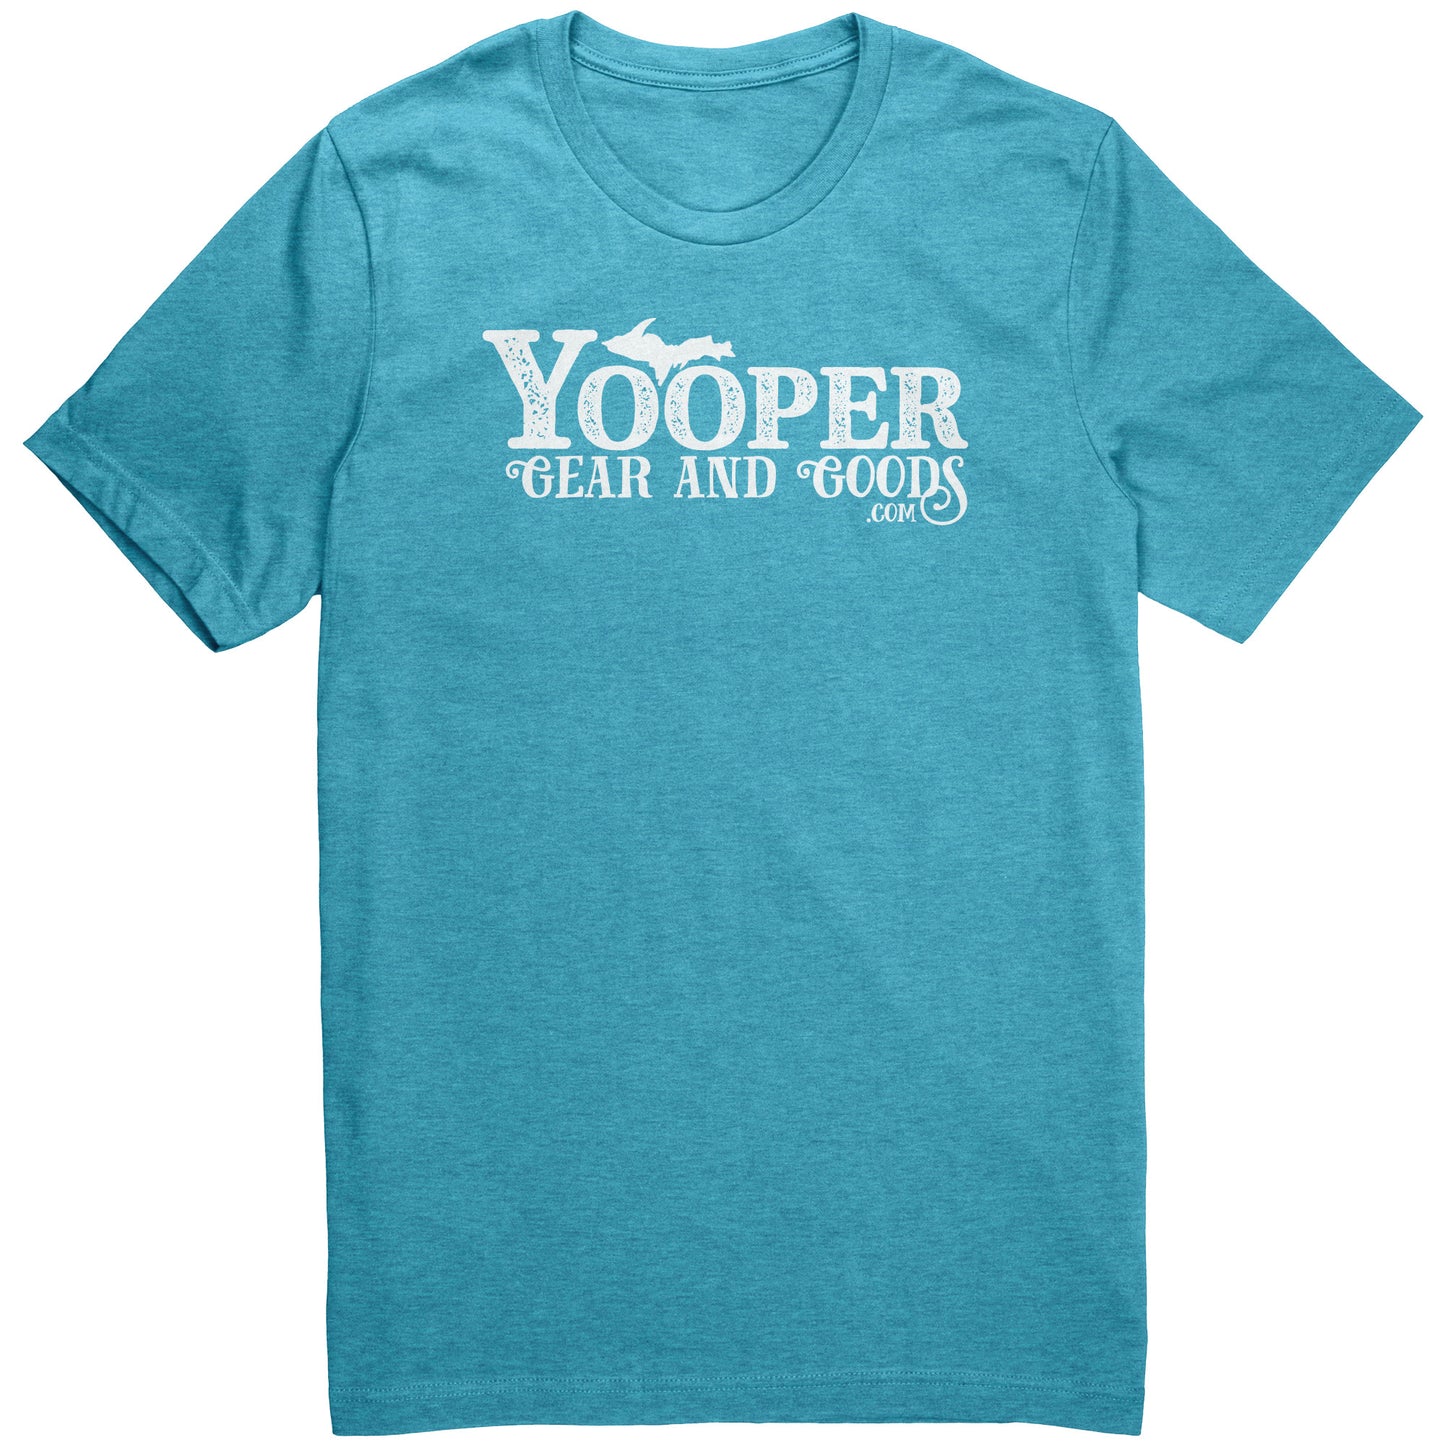 Yooper Gear & Goods shirt